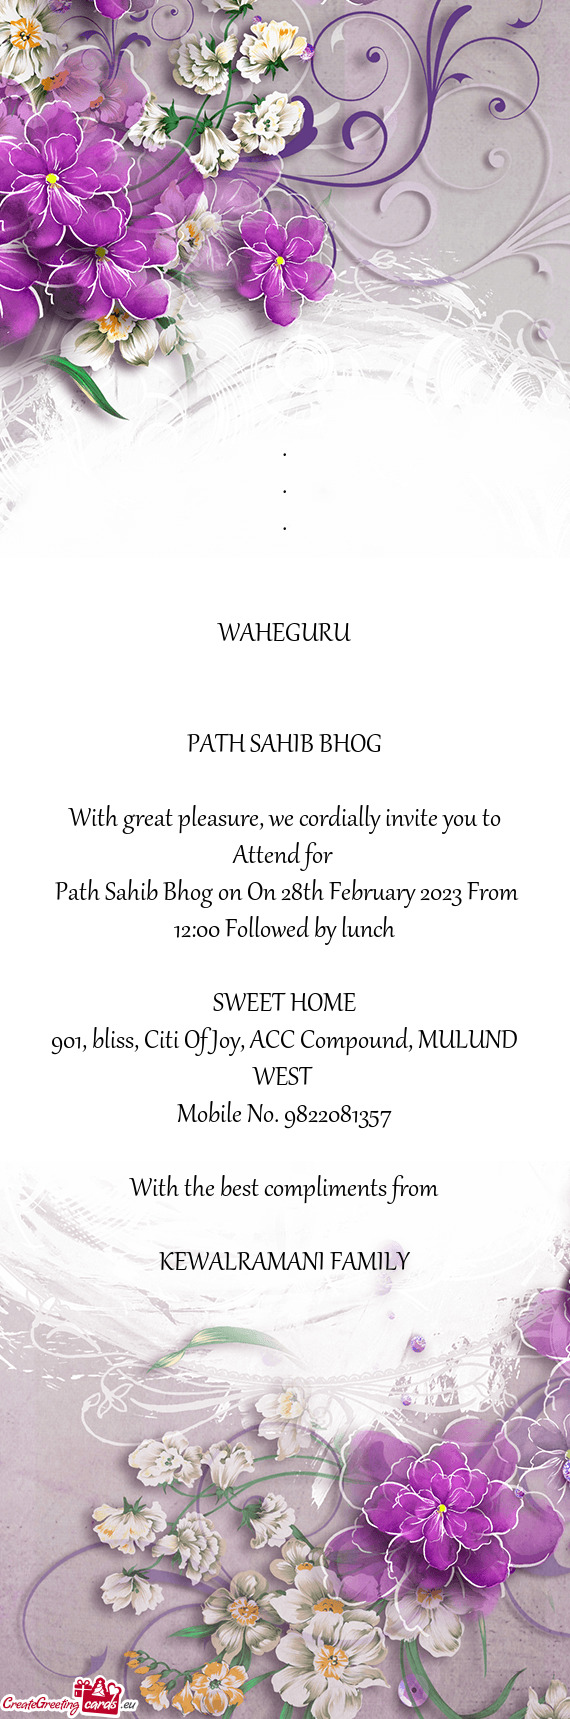 Path Sahib Bhog on On 28th February 2023 From 12:00 Followed by lunch